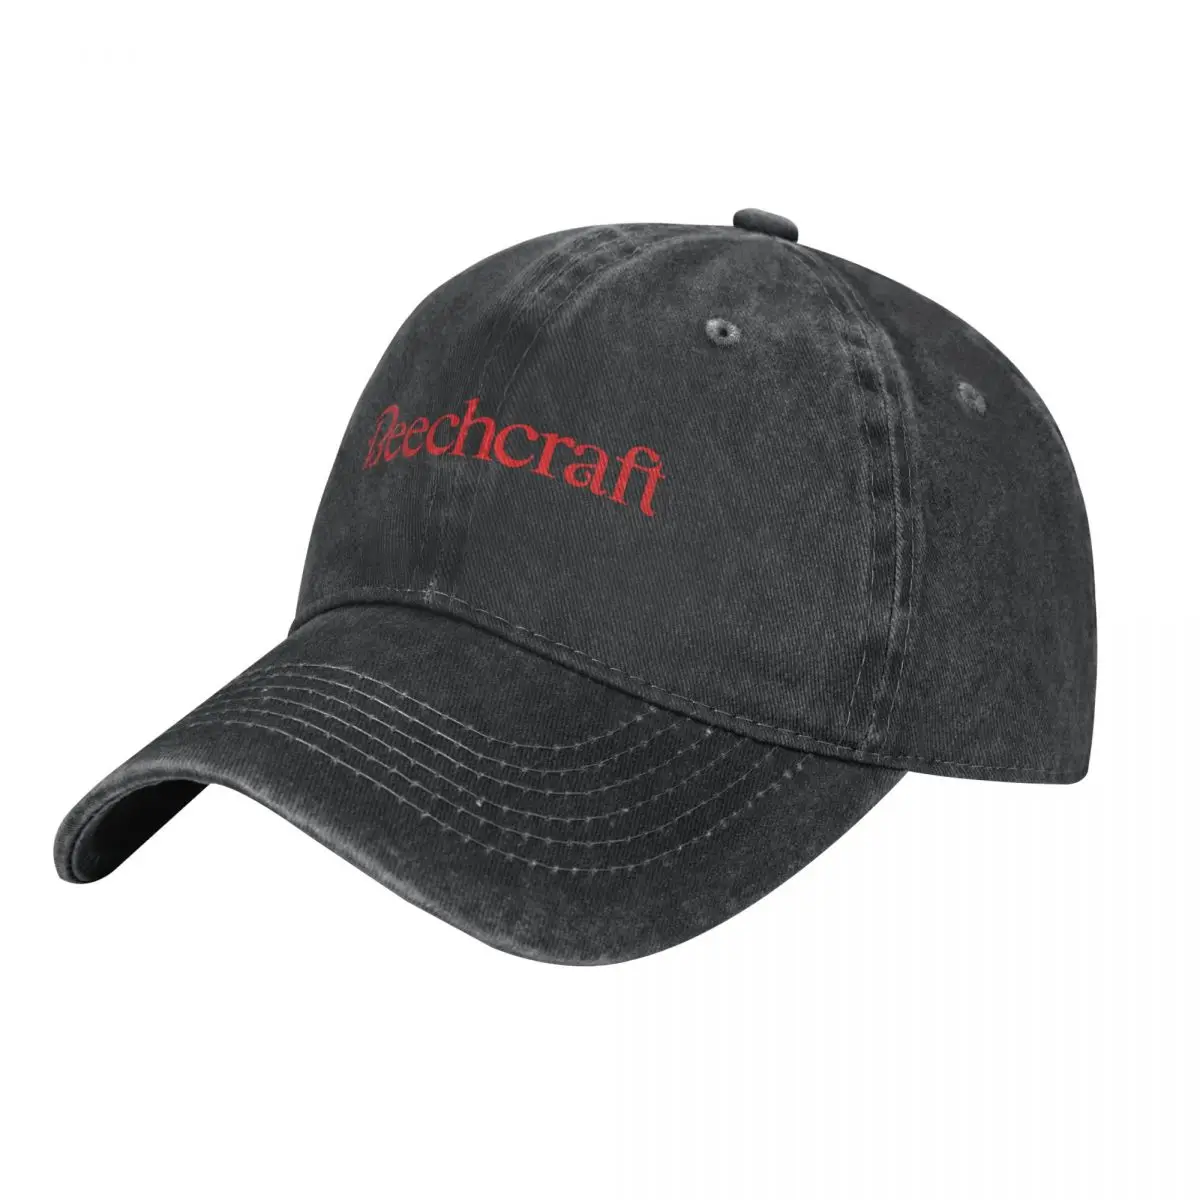 

Beechcraft Logo Cowboy Hat Luxury Hat Big Size Hat Fashion Beach dad Men Caps Women's